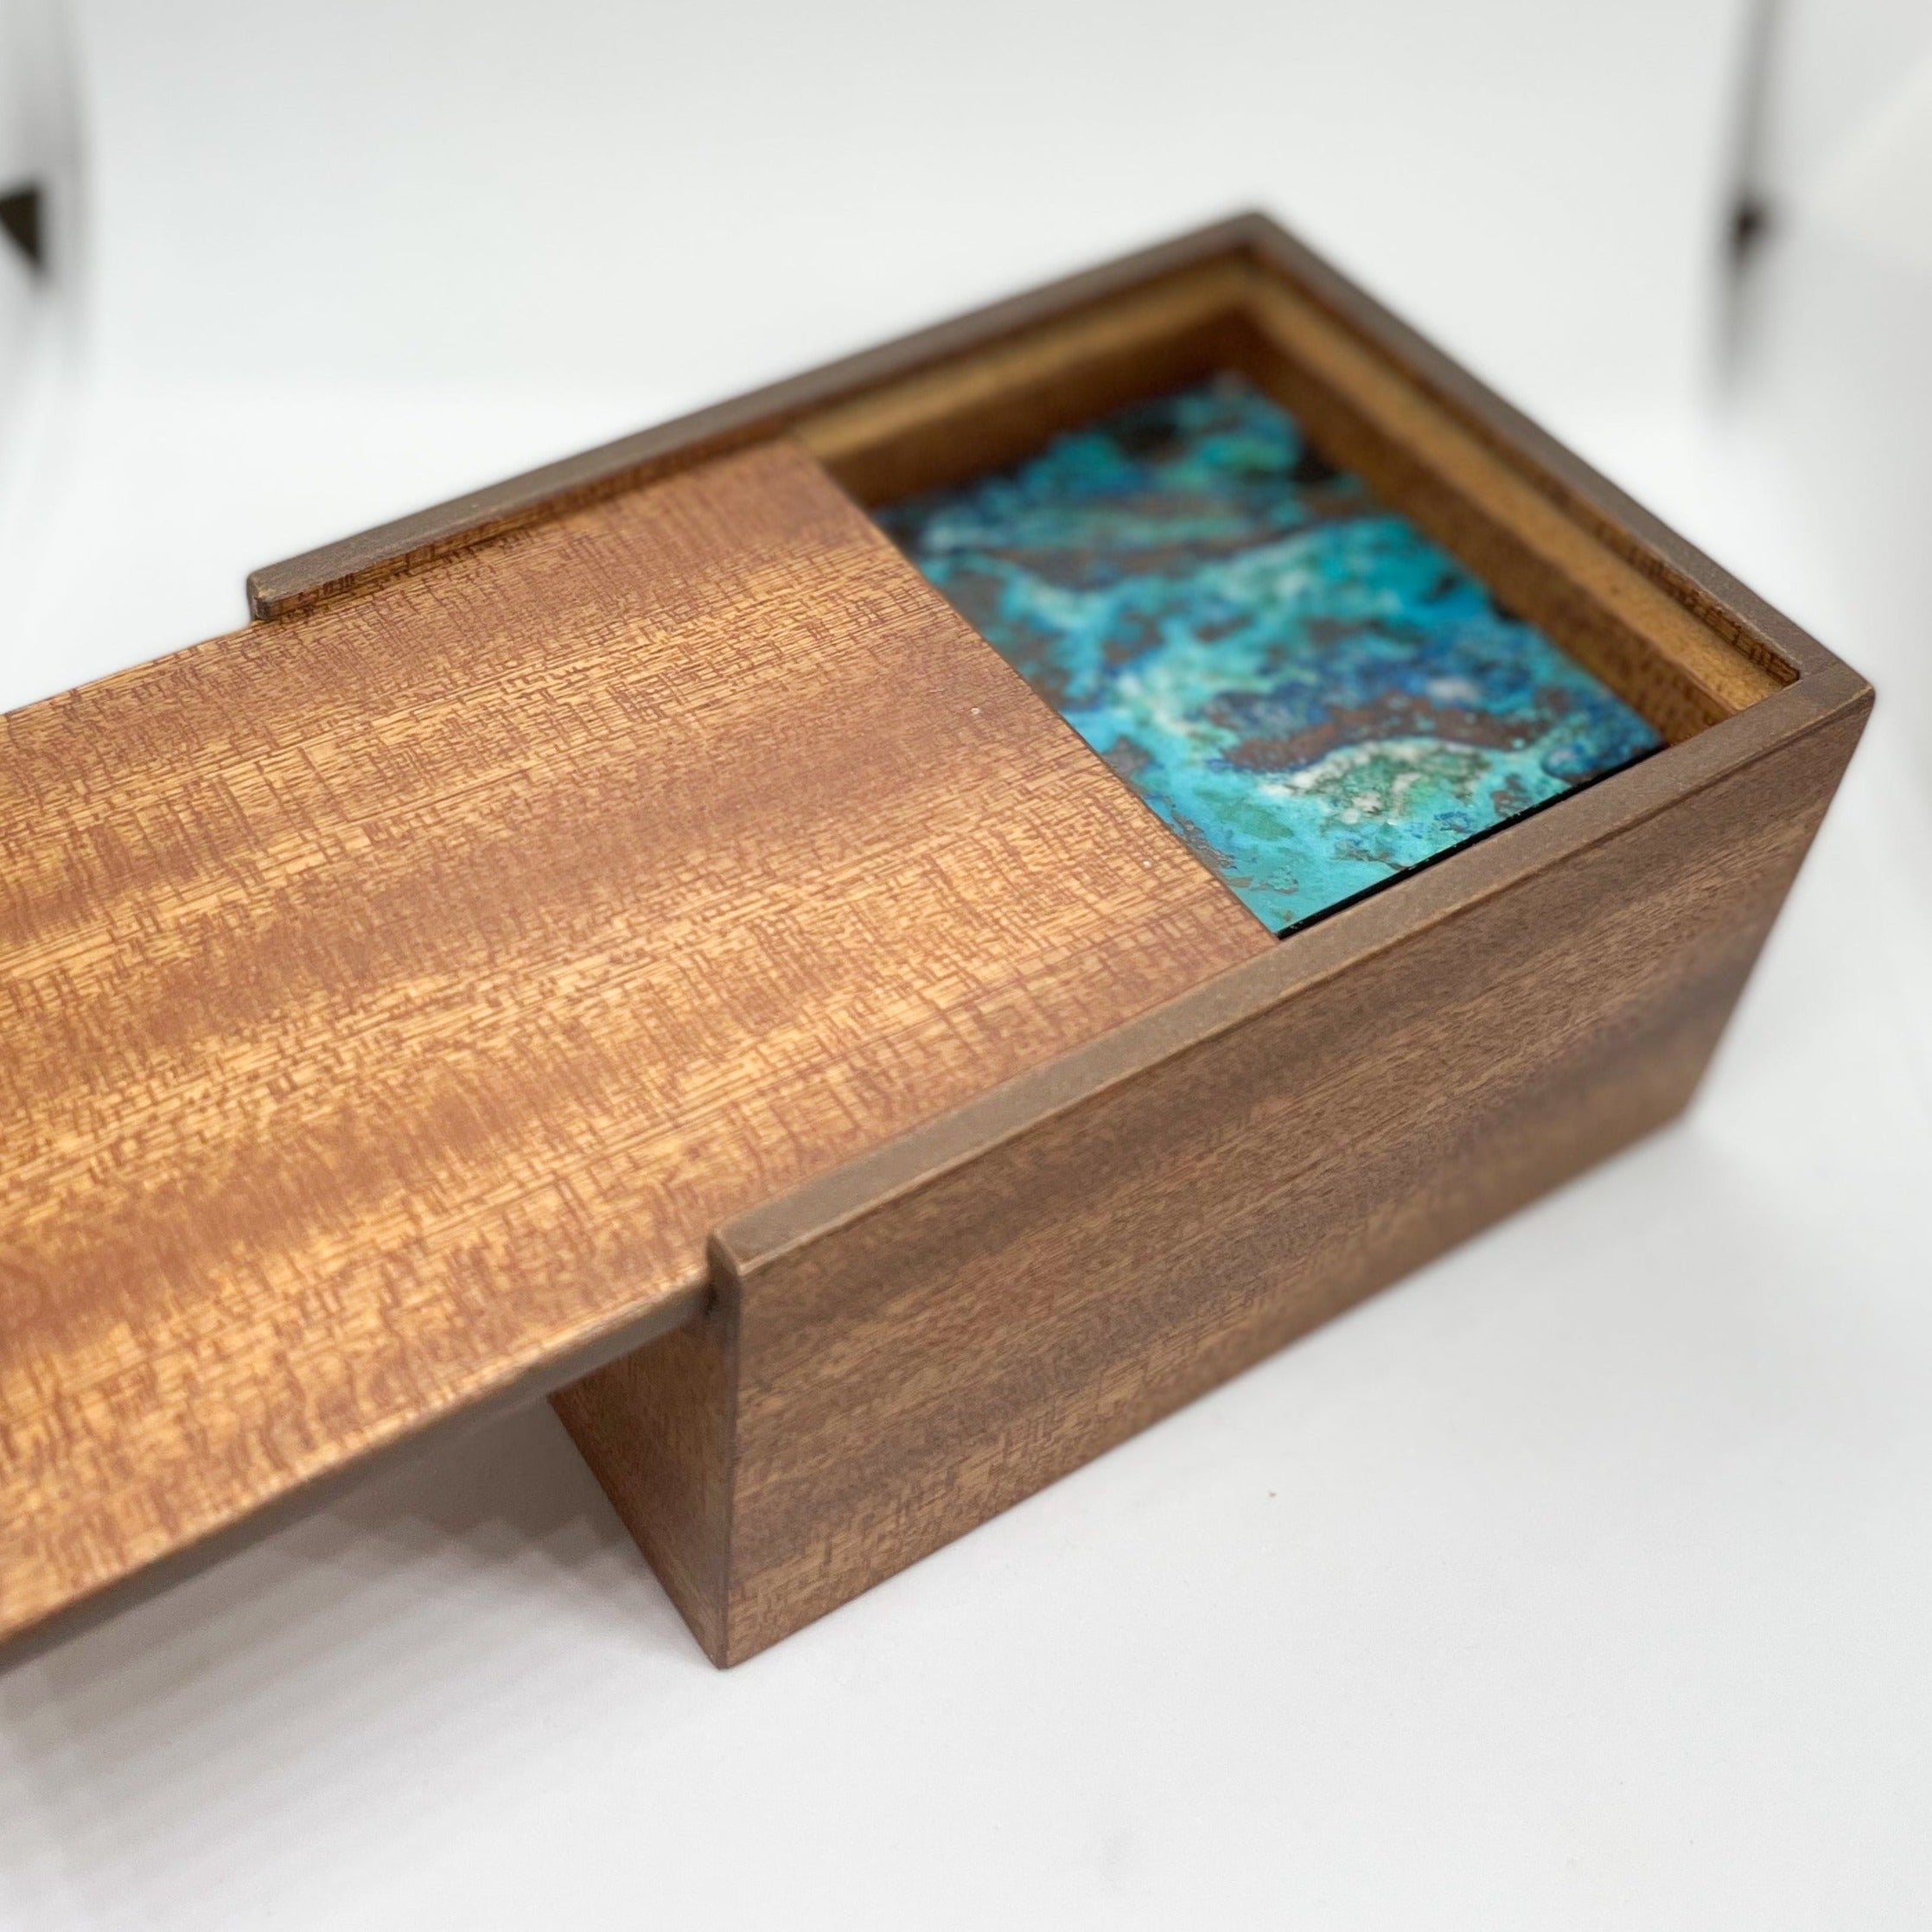 Chrysocolla Stone Box - Rare | Home Decor